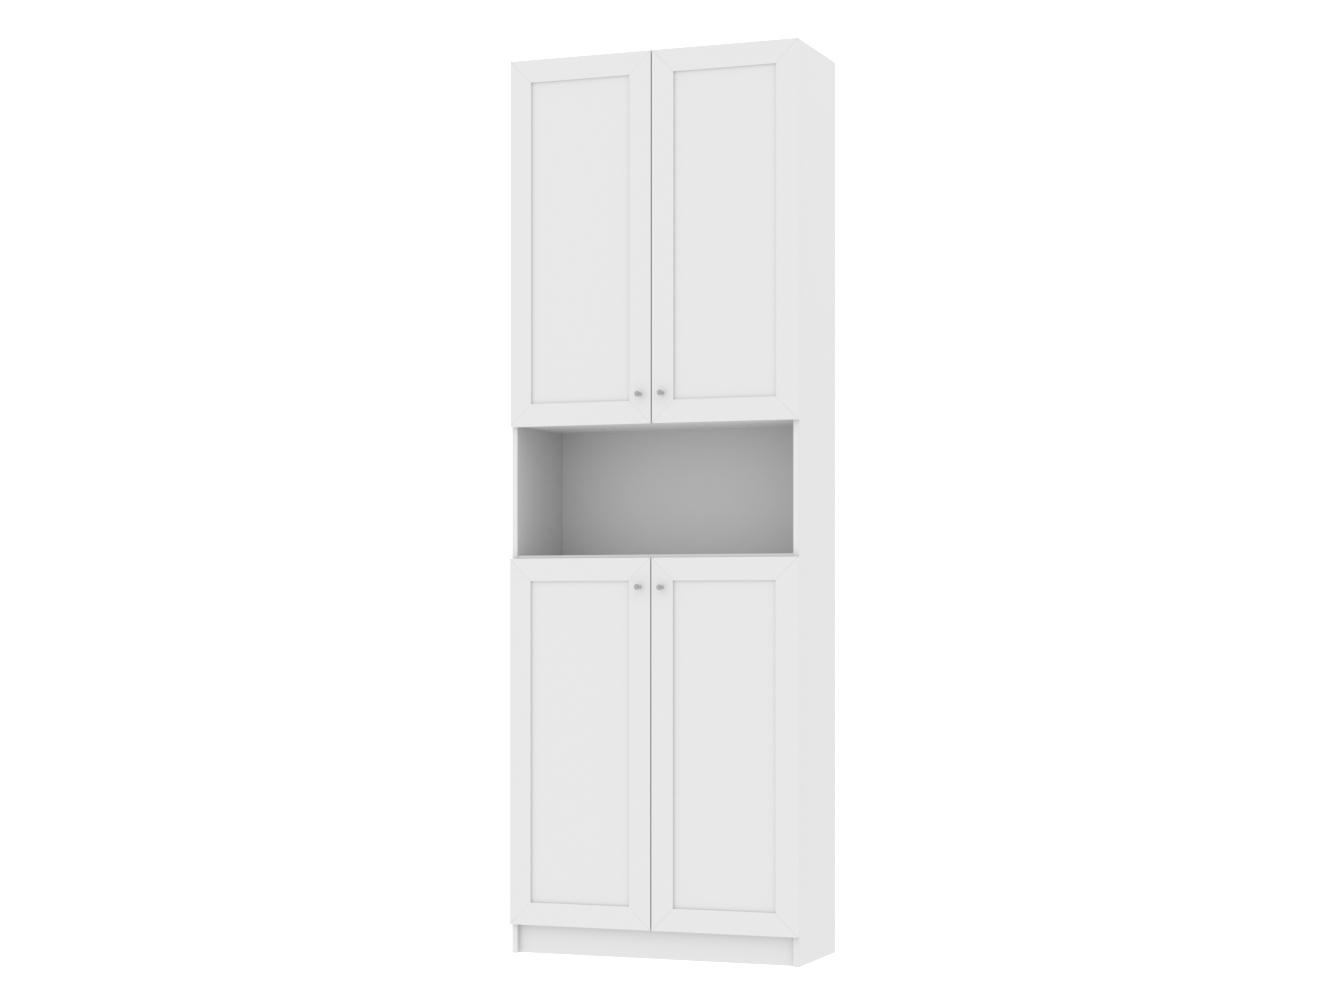 Изображение товара Книжный шкаф Билли 385 white desire ИКЕА (IKEA), 80x30x237 см на сайте adeta.ru